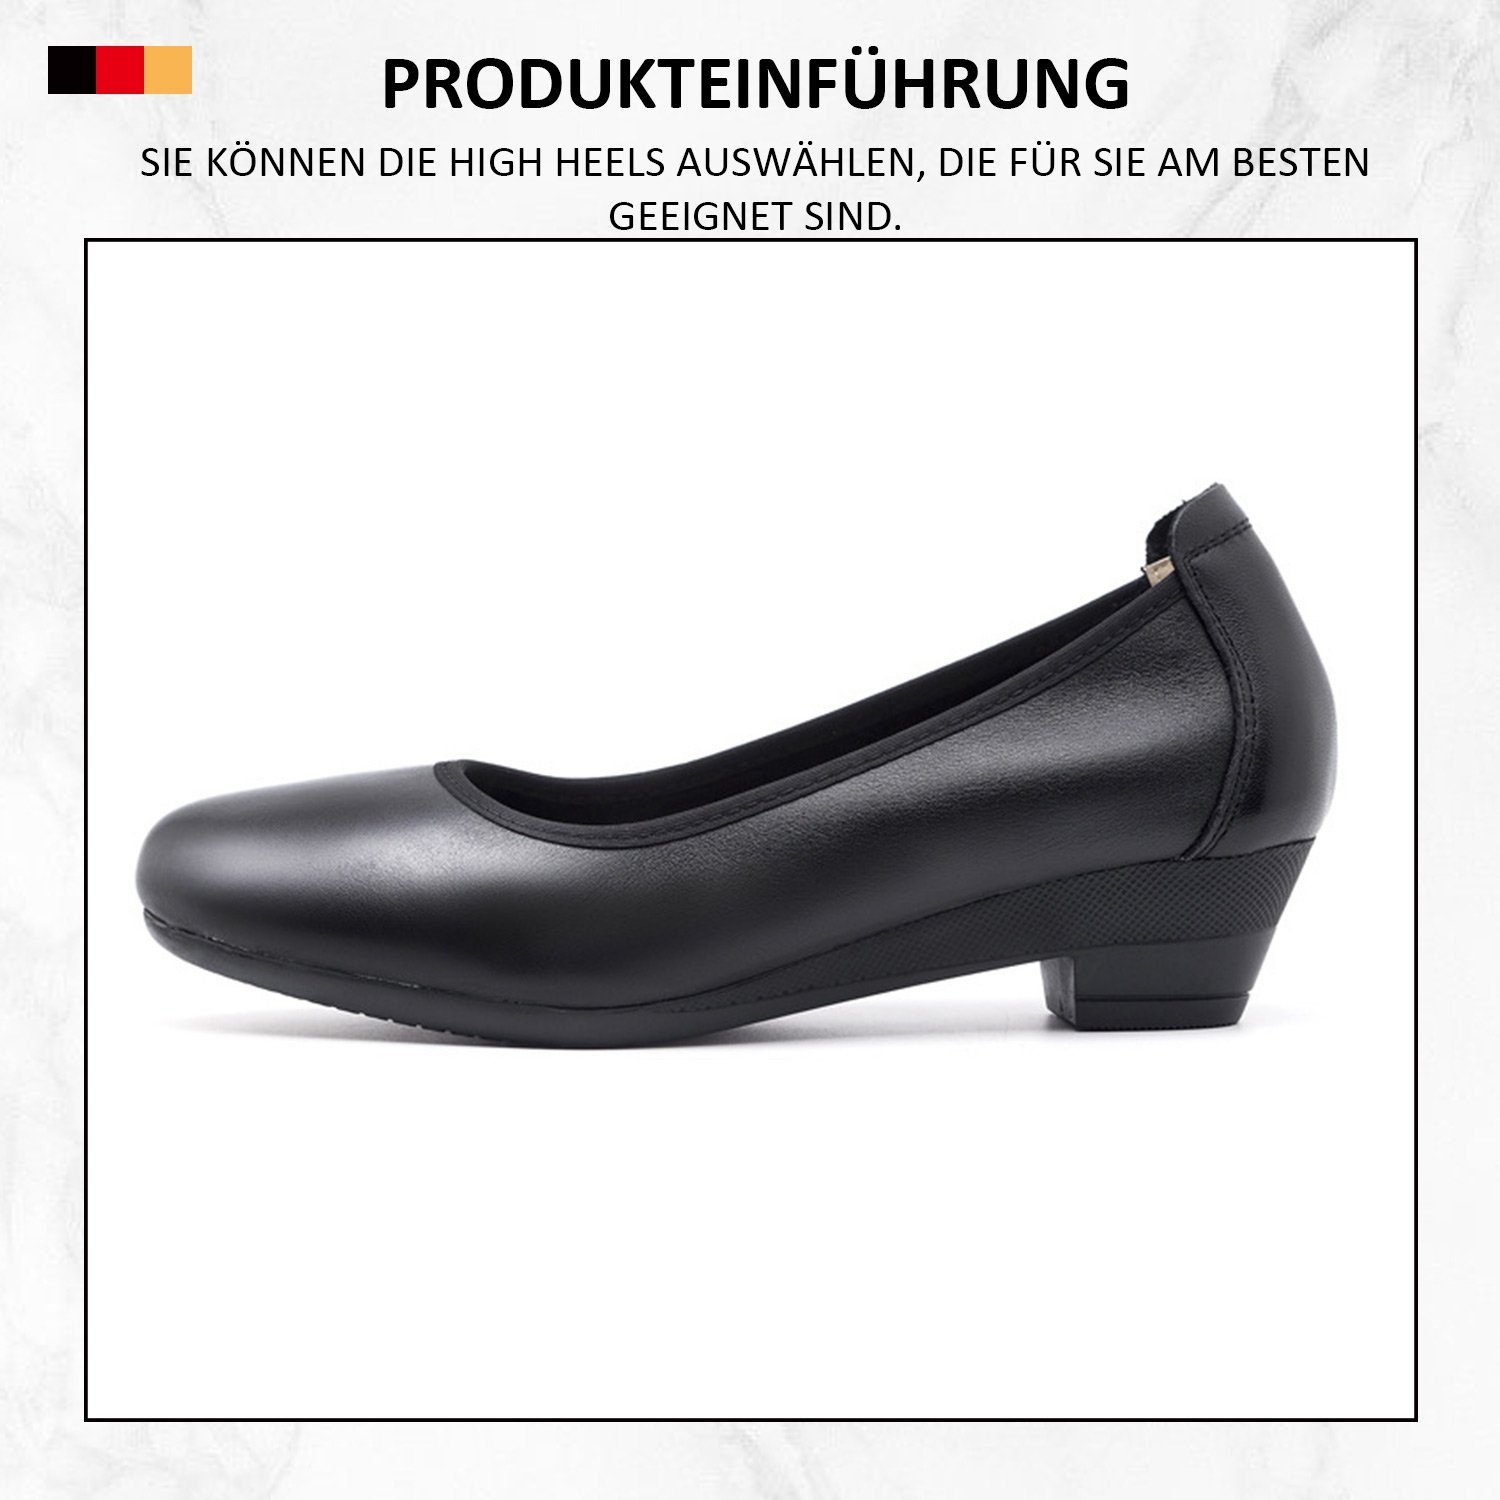 runder Pumps MAGICSHE Linie formelle Pumps in Frauen Schwarz006 Bequeme geschlossener mit klassischer Zehenpartie Schuhe